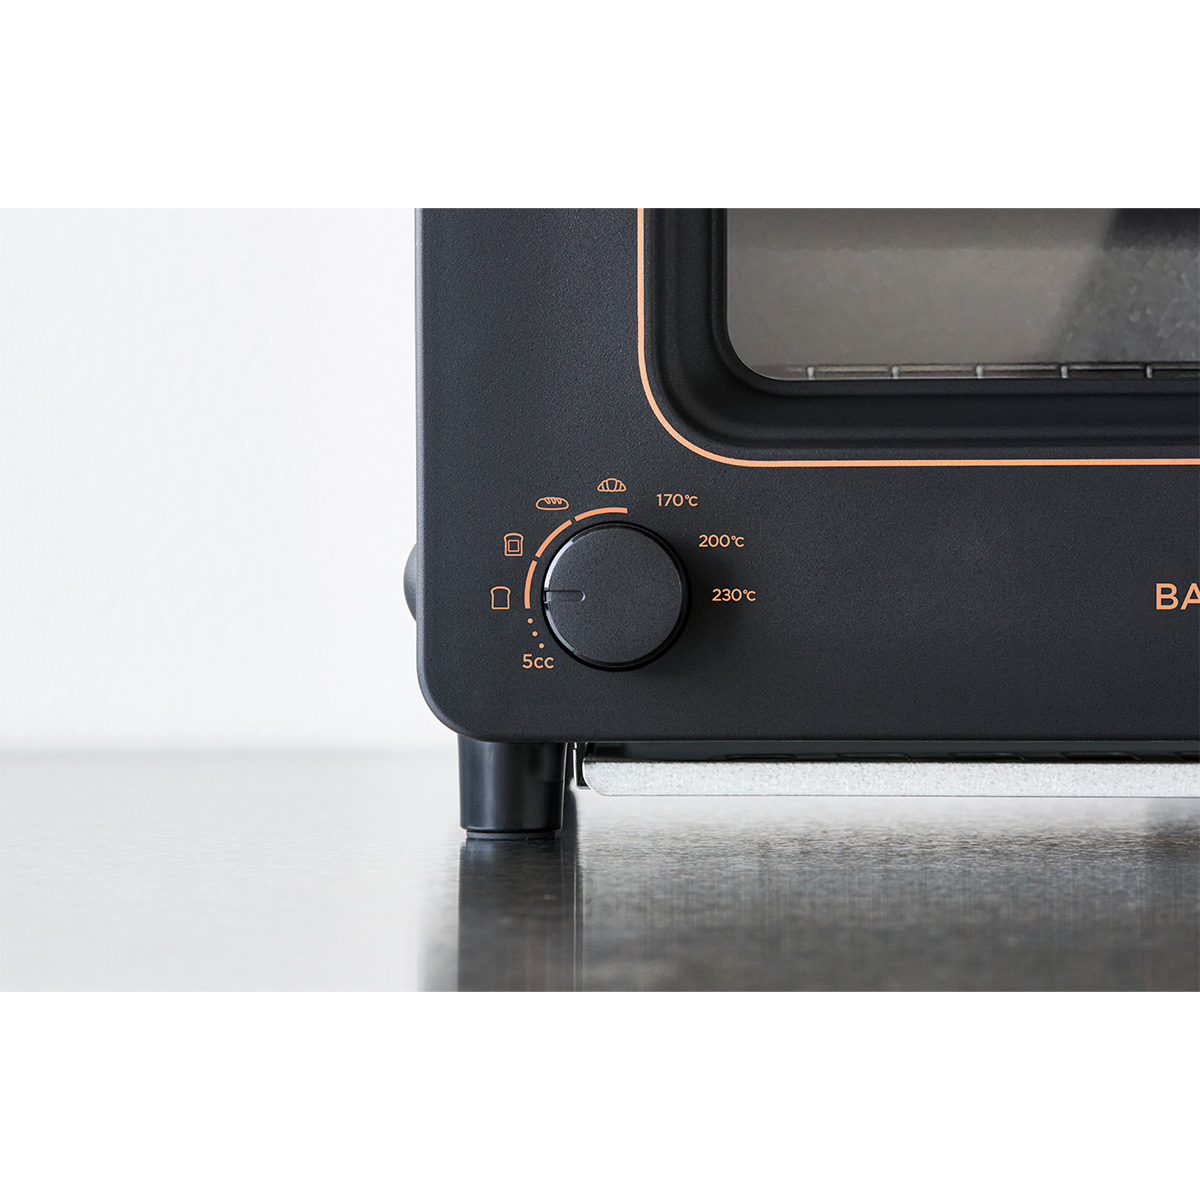 ザ・トースター [30日間全額返金保証] 正規品 「BALMUDA The Toaster」 ブラック